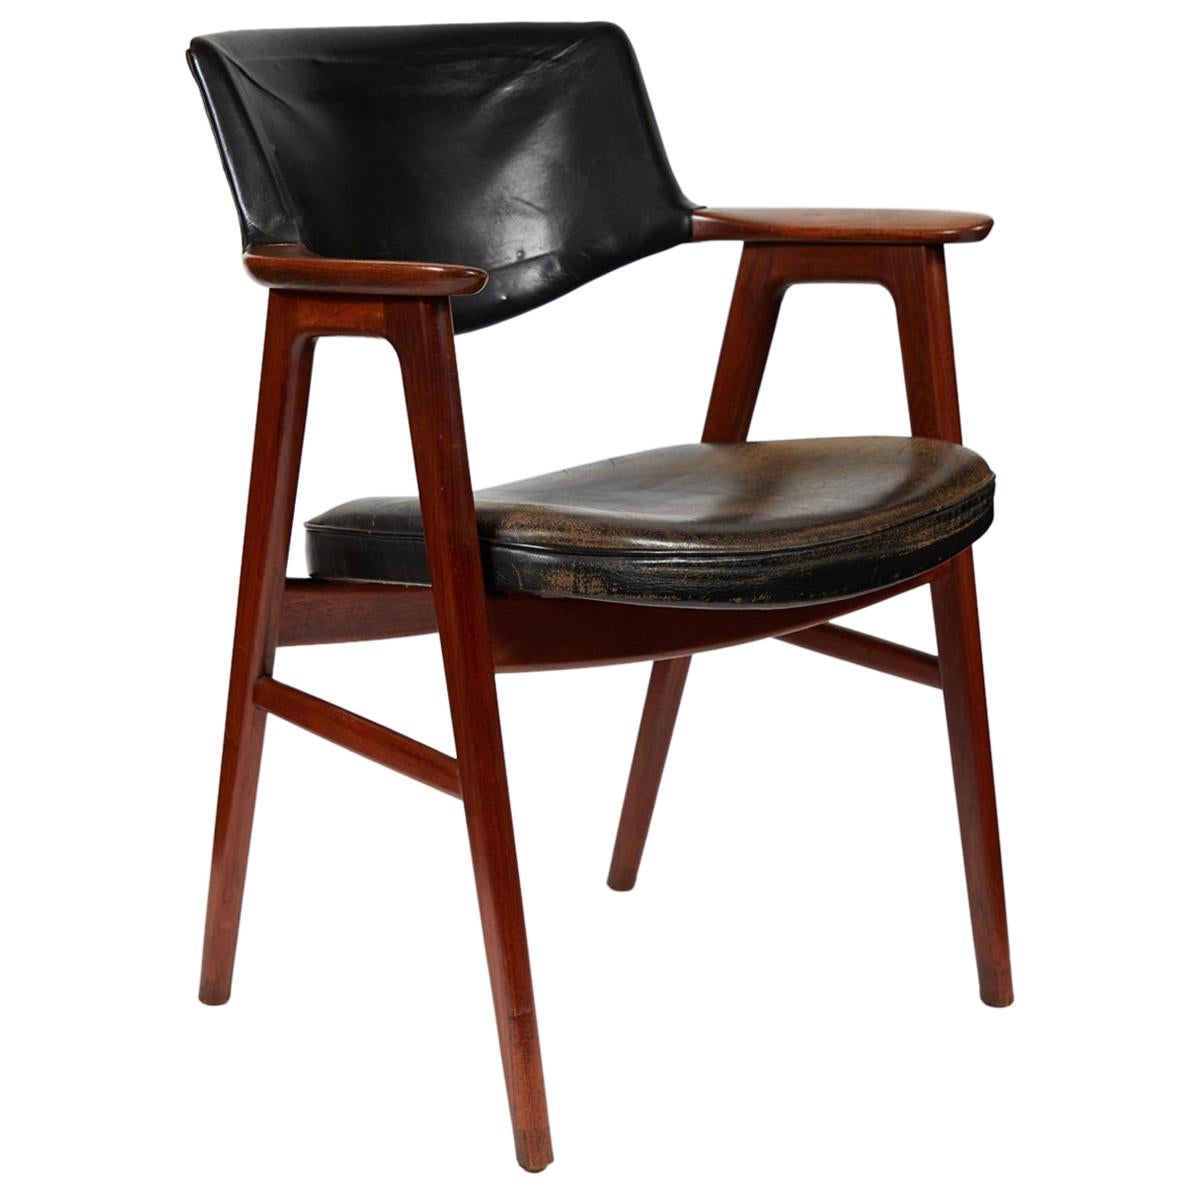 Fauteuil ou fauteuil de bureau en acajou de style mi-siècle moderne tapissé de cuir noir